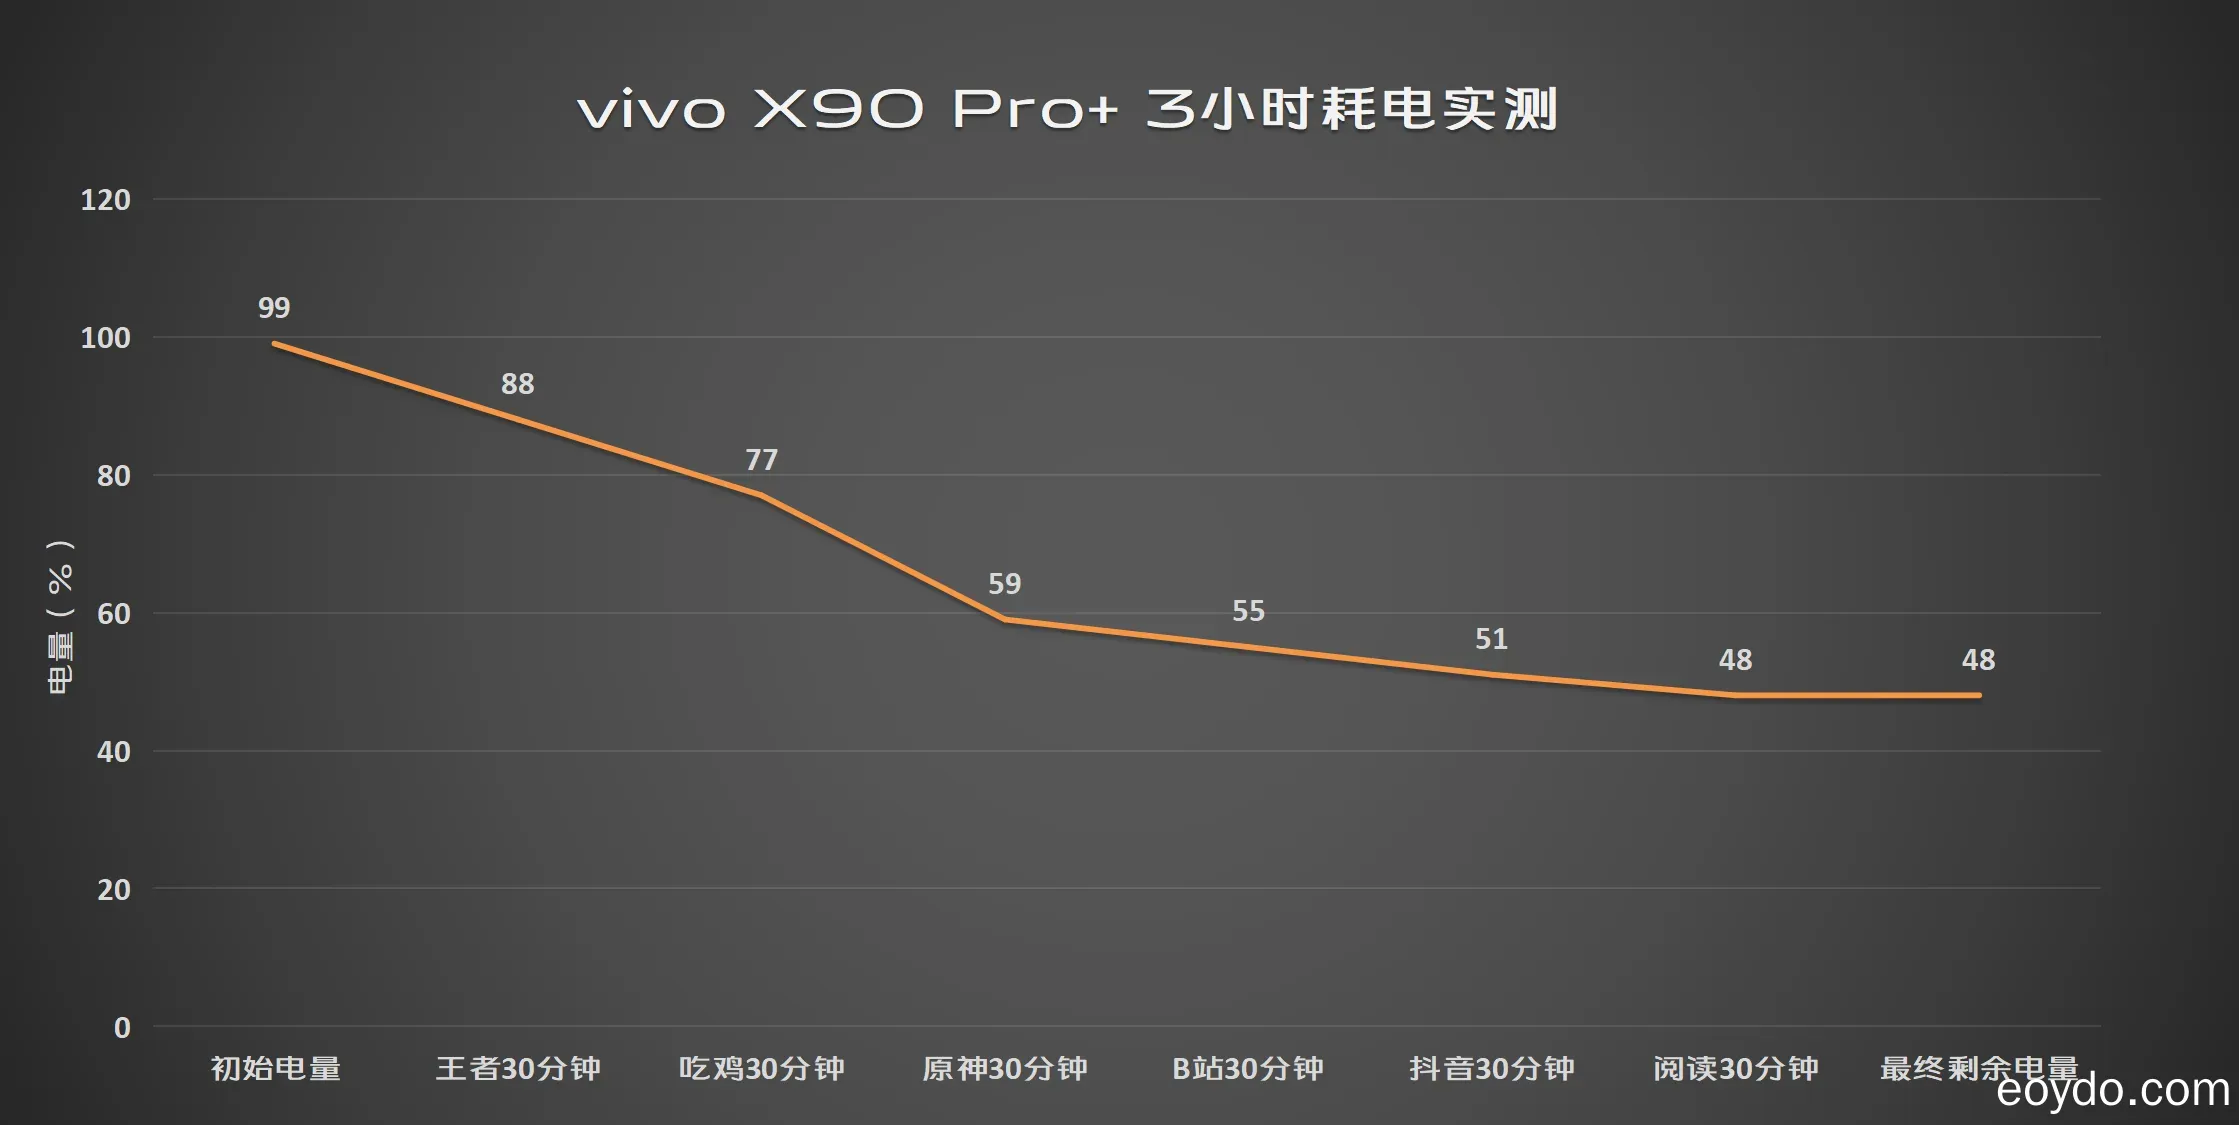 vivo X90 Pro+ 評測